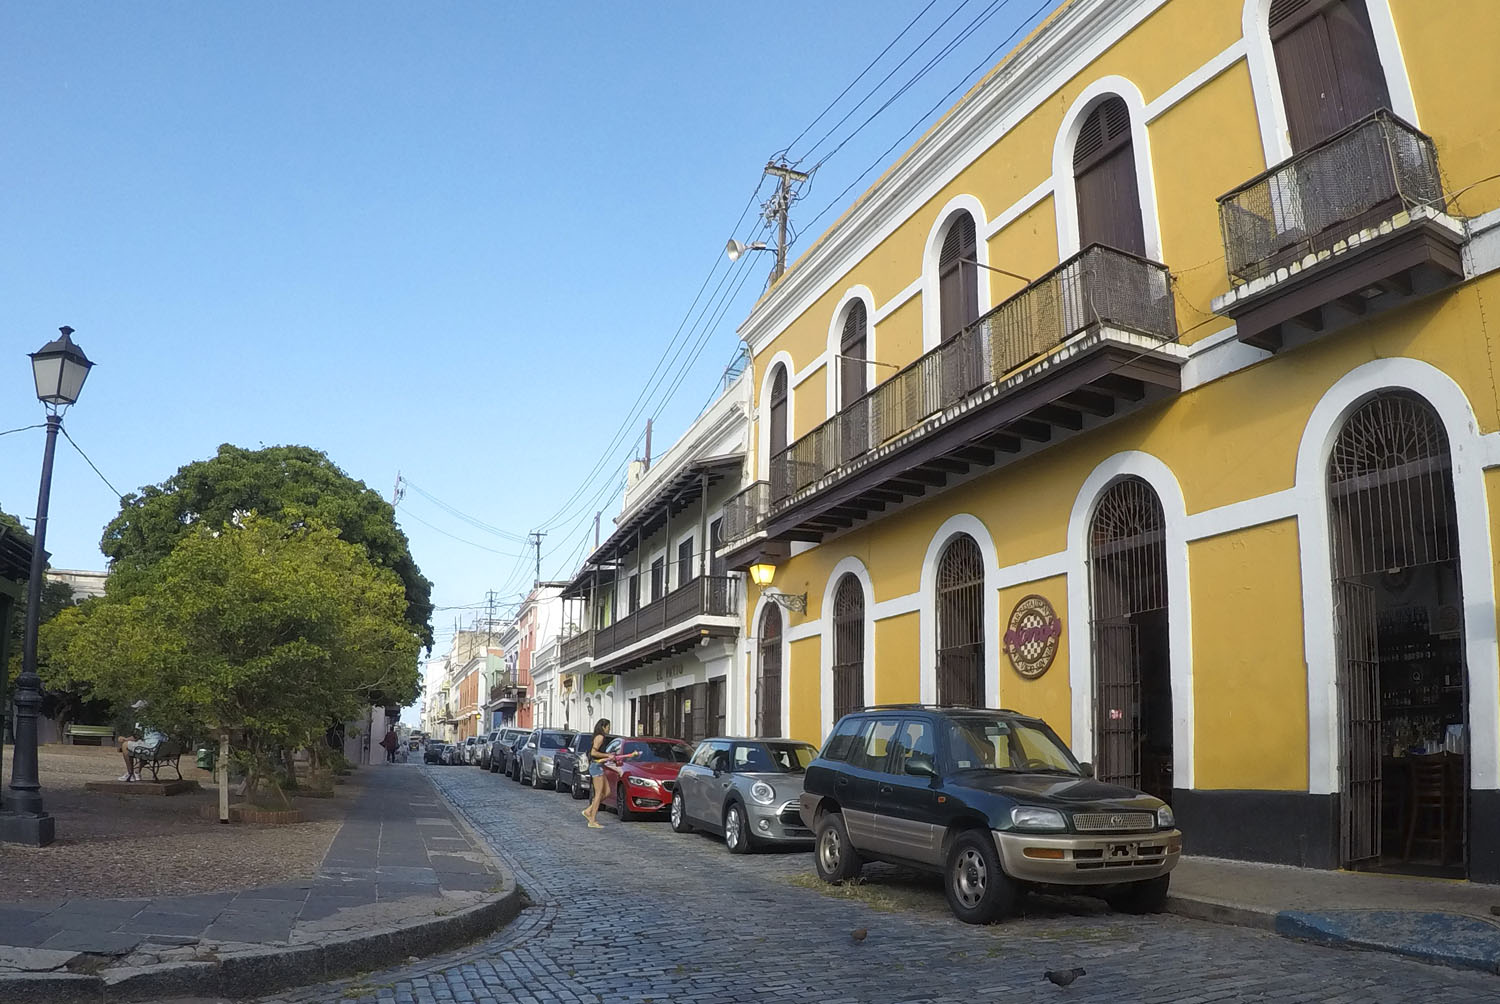 Take a walk around Old San Juan town puerto rico